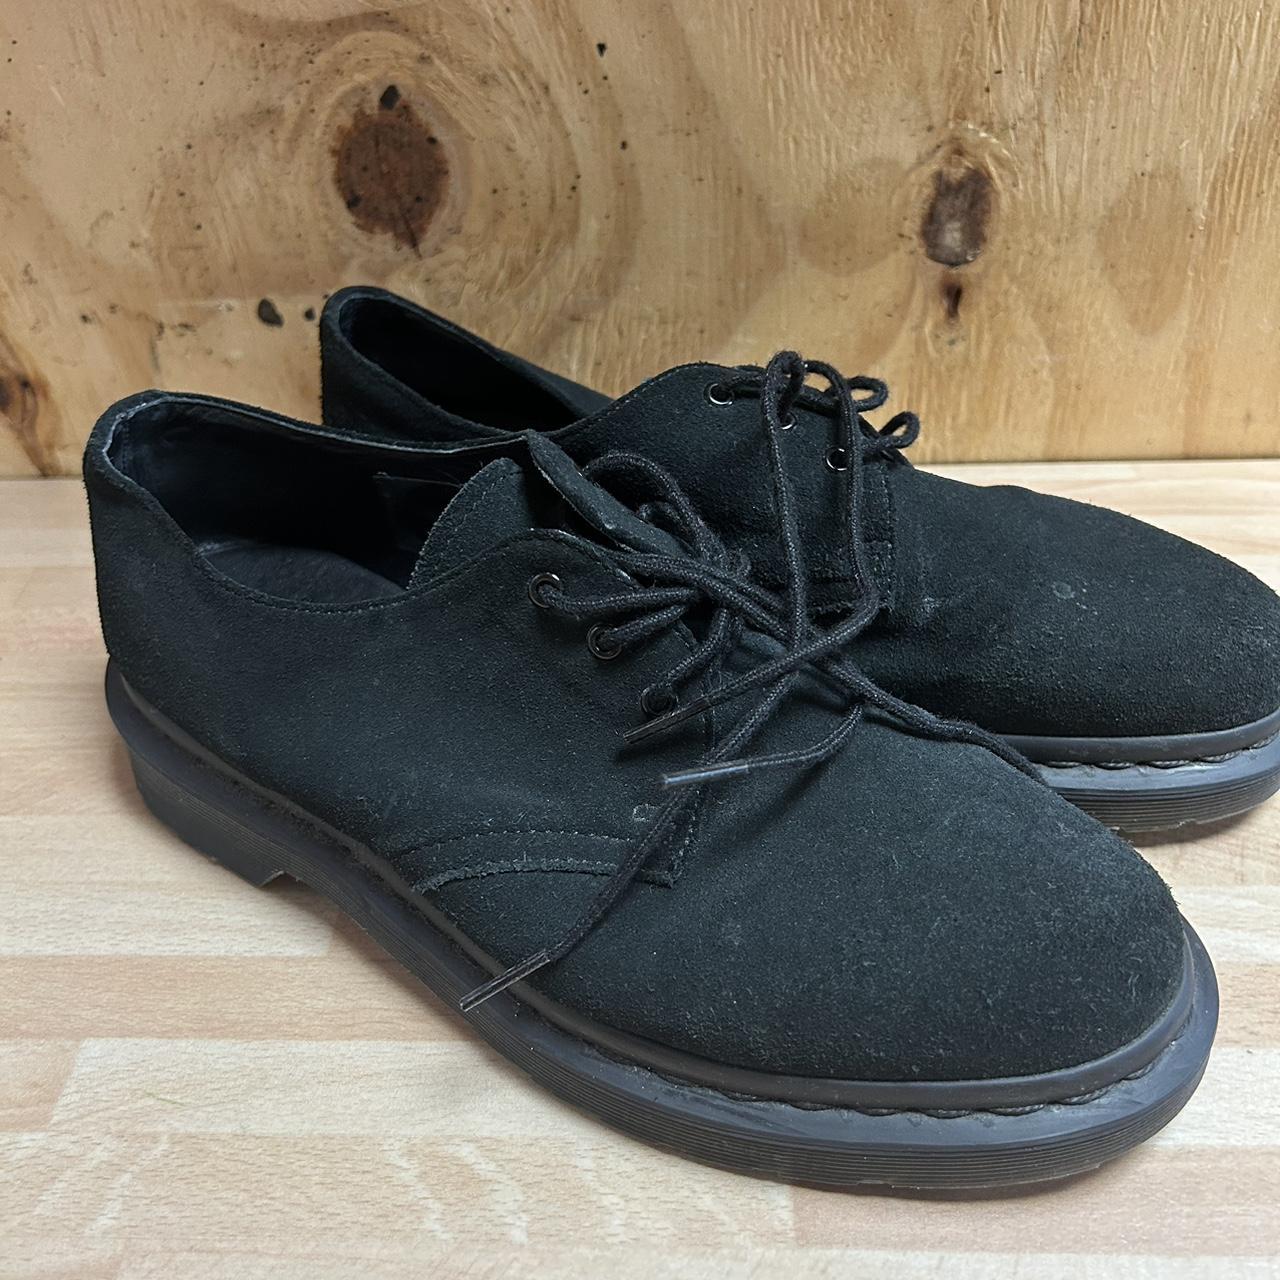 The original Dr. Martens Black shoes Leather... - Depop